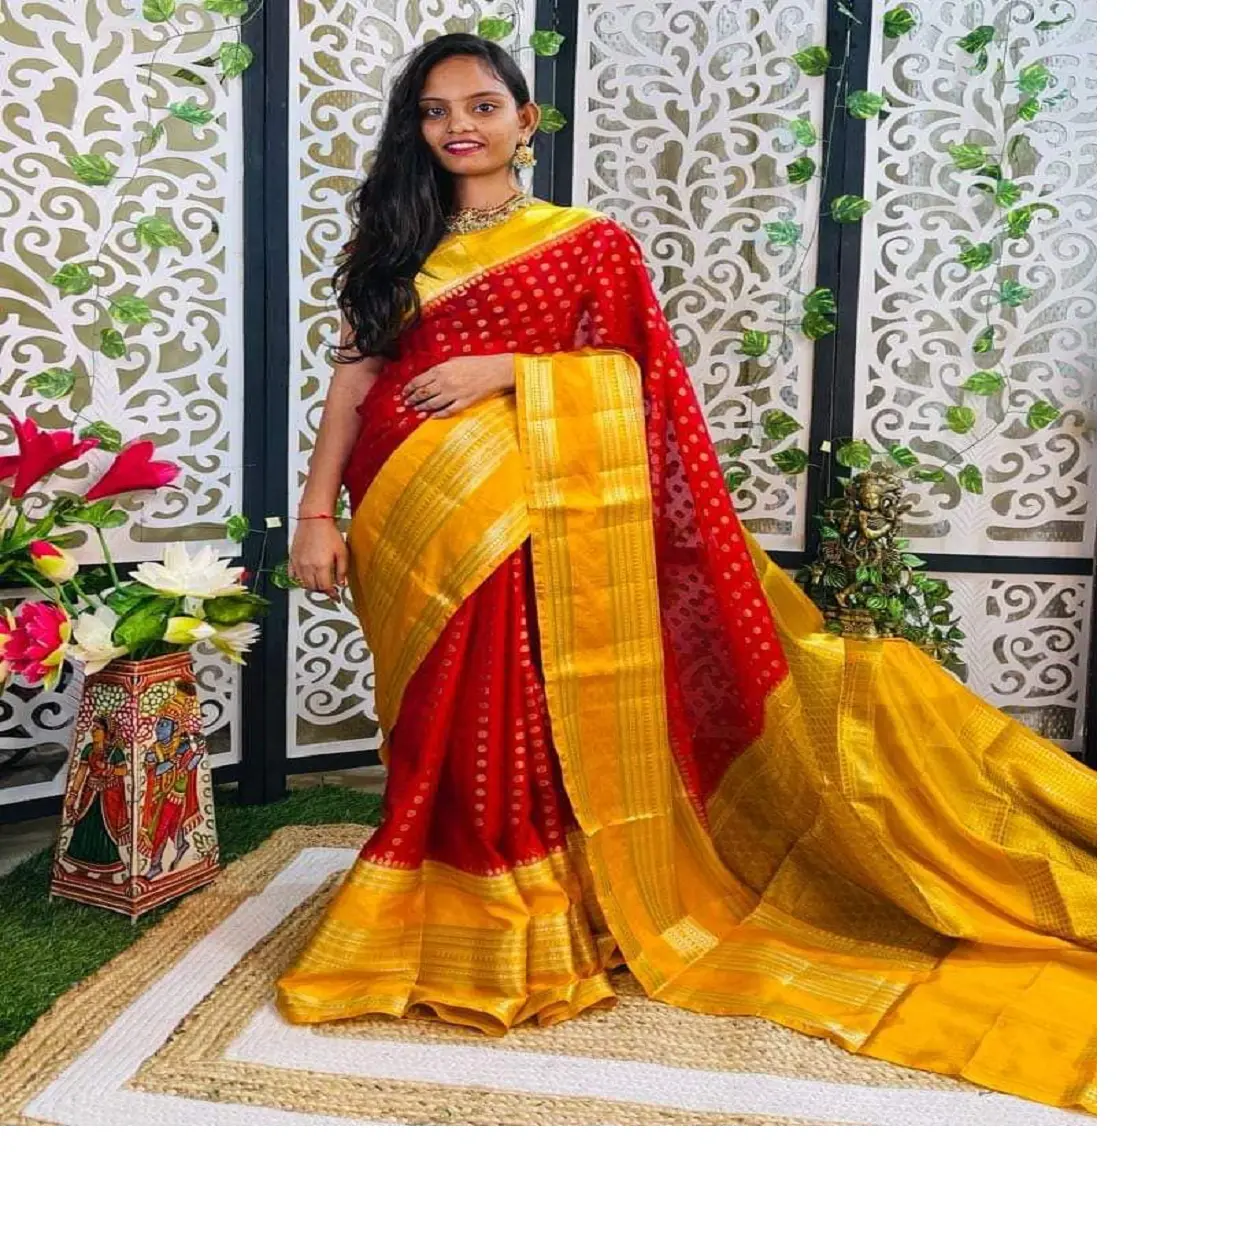 Saree mağazaları ve moda tasarımcıları için çeşitli renkler ve sınırlarda altın sınır brokar ipek sarees ile özel yapılmış